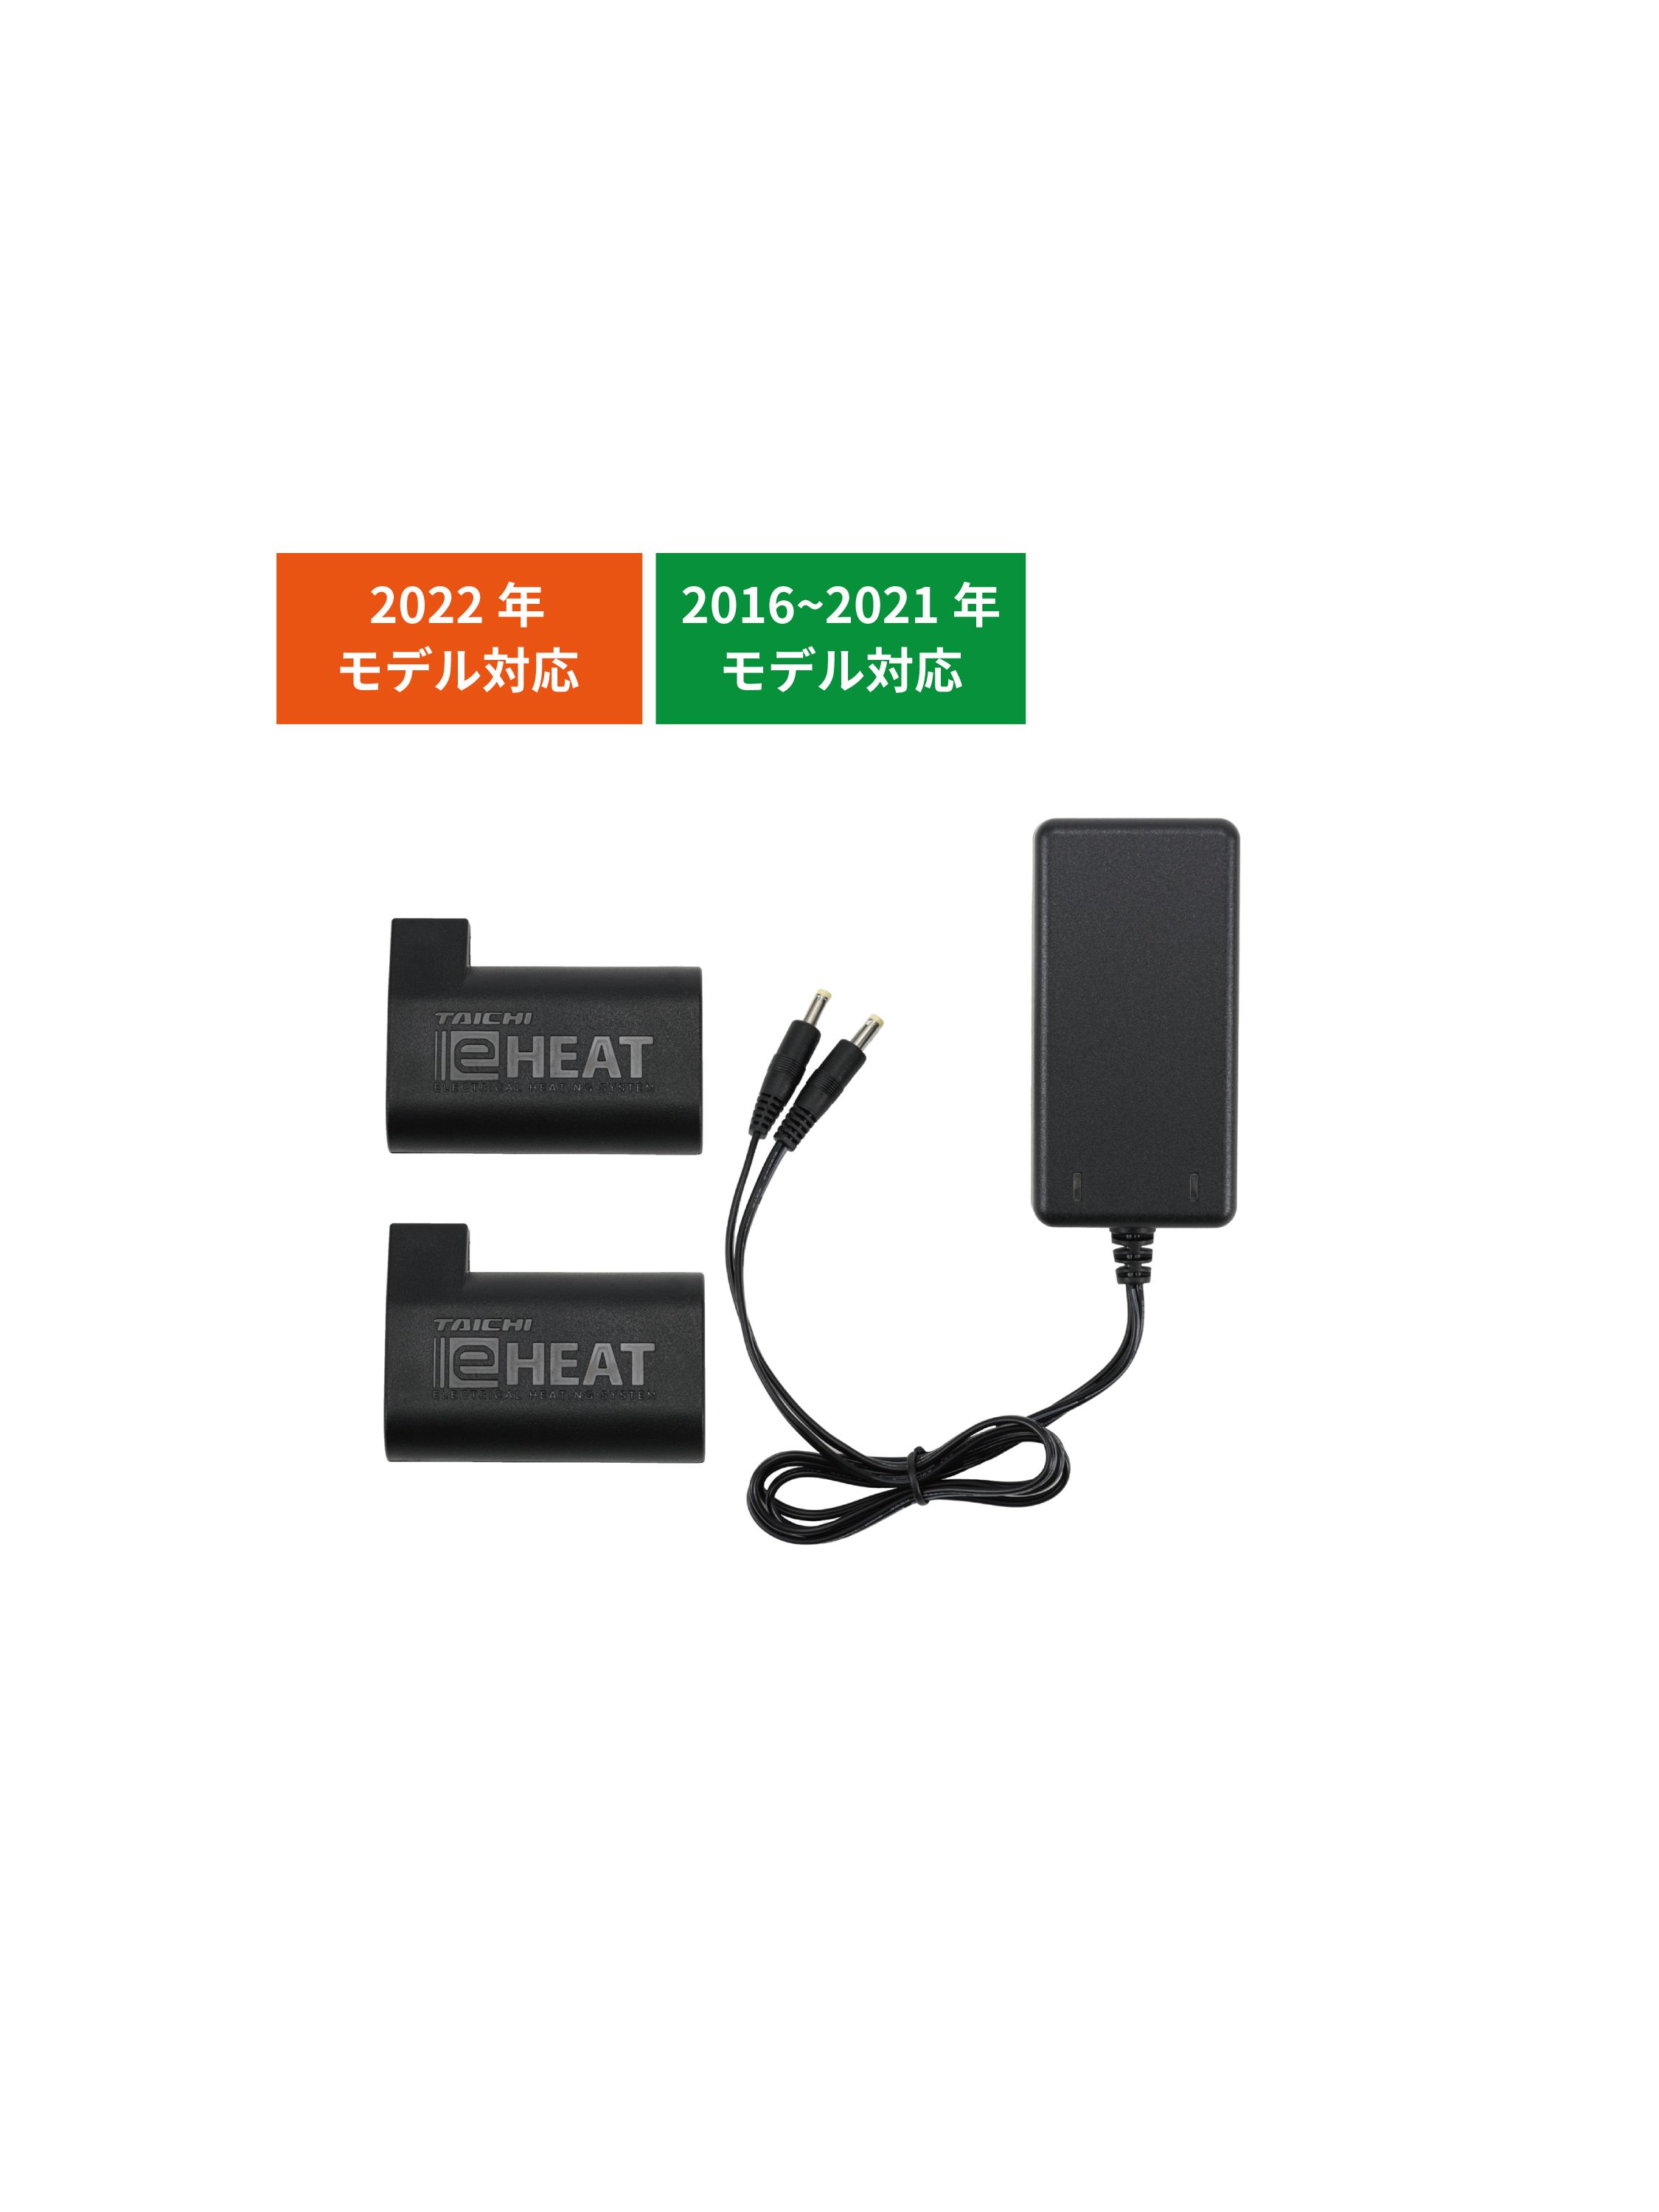 タイチ公式通販】RSP064 | e-HEAT 7.2V充電器&バッテリーセット | TAICHI